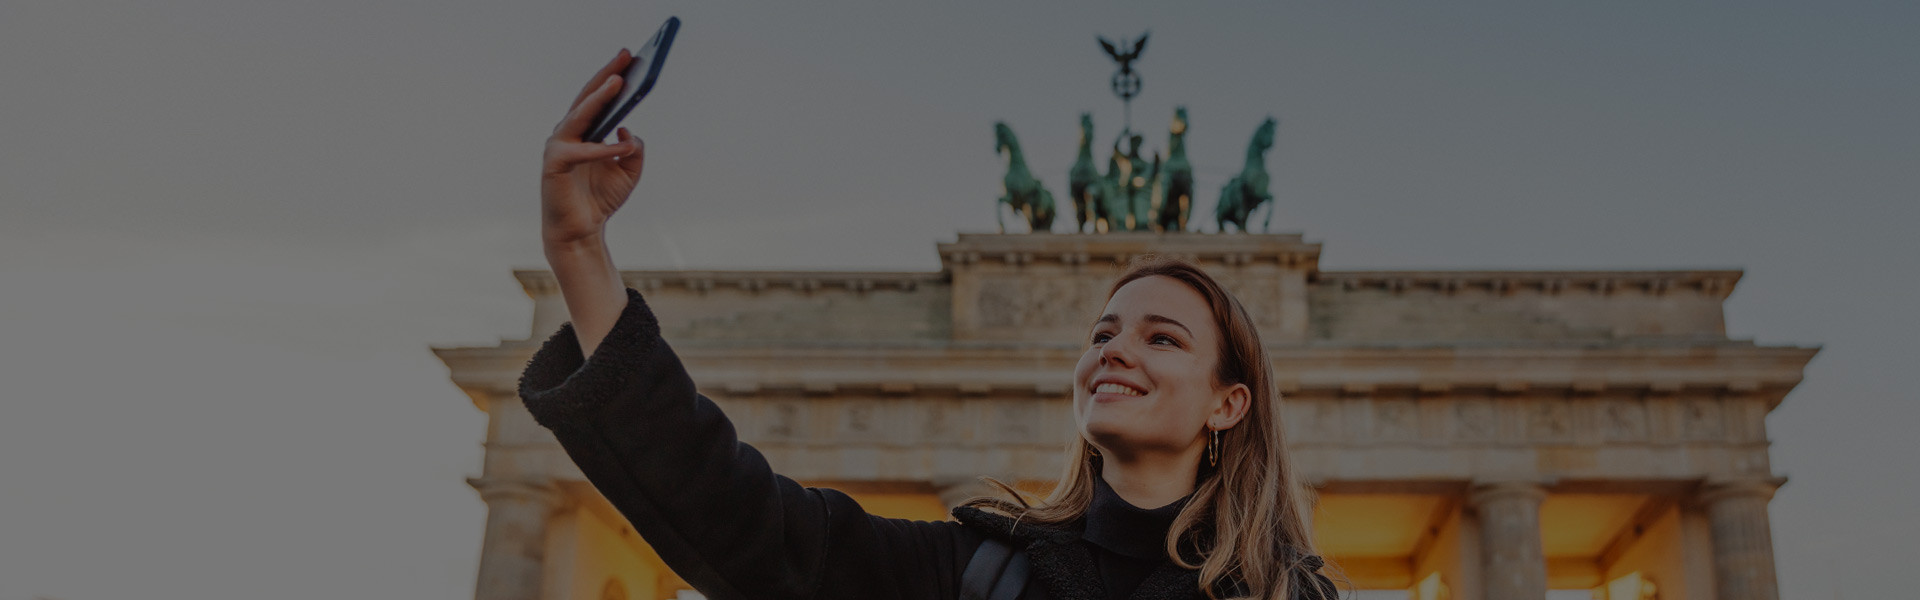 Au pair con smartphone en la Puerta de Brandenburgo en Berlín